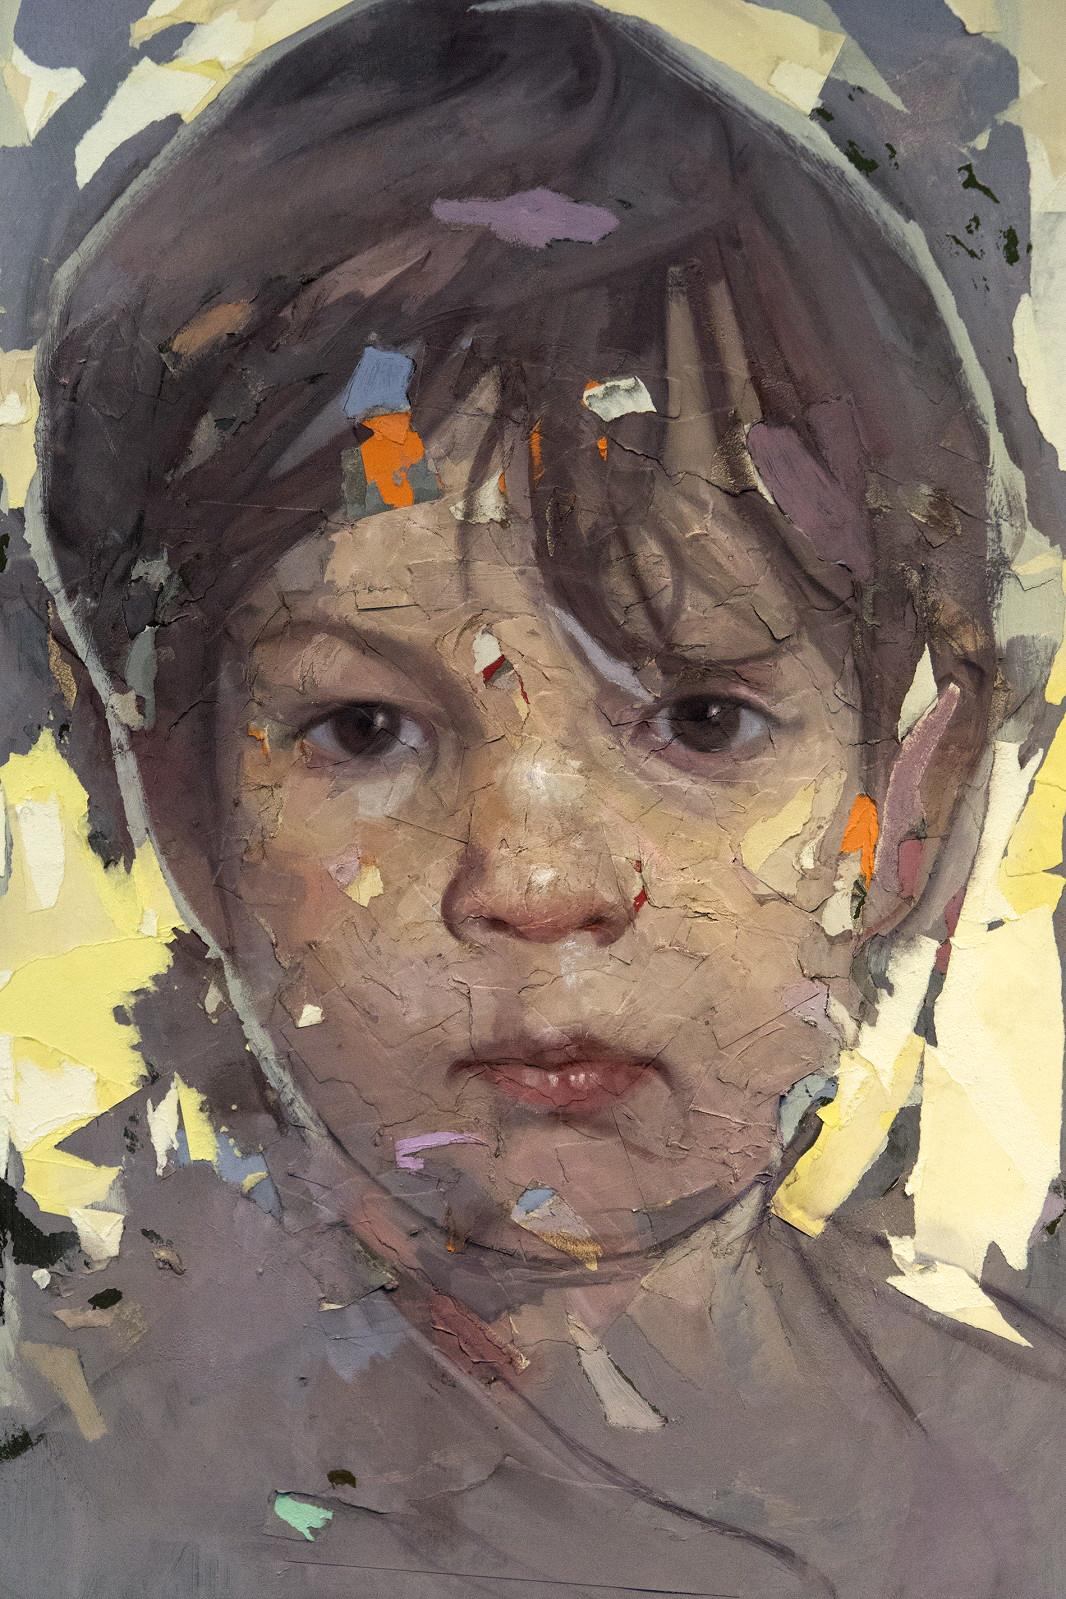 Ce portrait par collage et techniques mixtes de Dan Hughes capture un moment de la jeune vie d'un enfant. Le personnage, au rendu réaliste, est encadré de gris chauds et de jaune beurre. 

Après avoir obtenu son MFA à la New York Academy of Art en